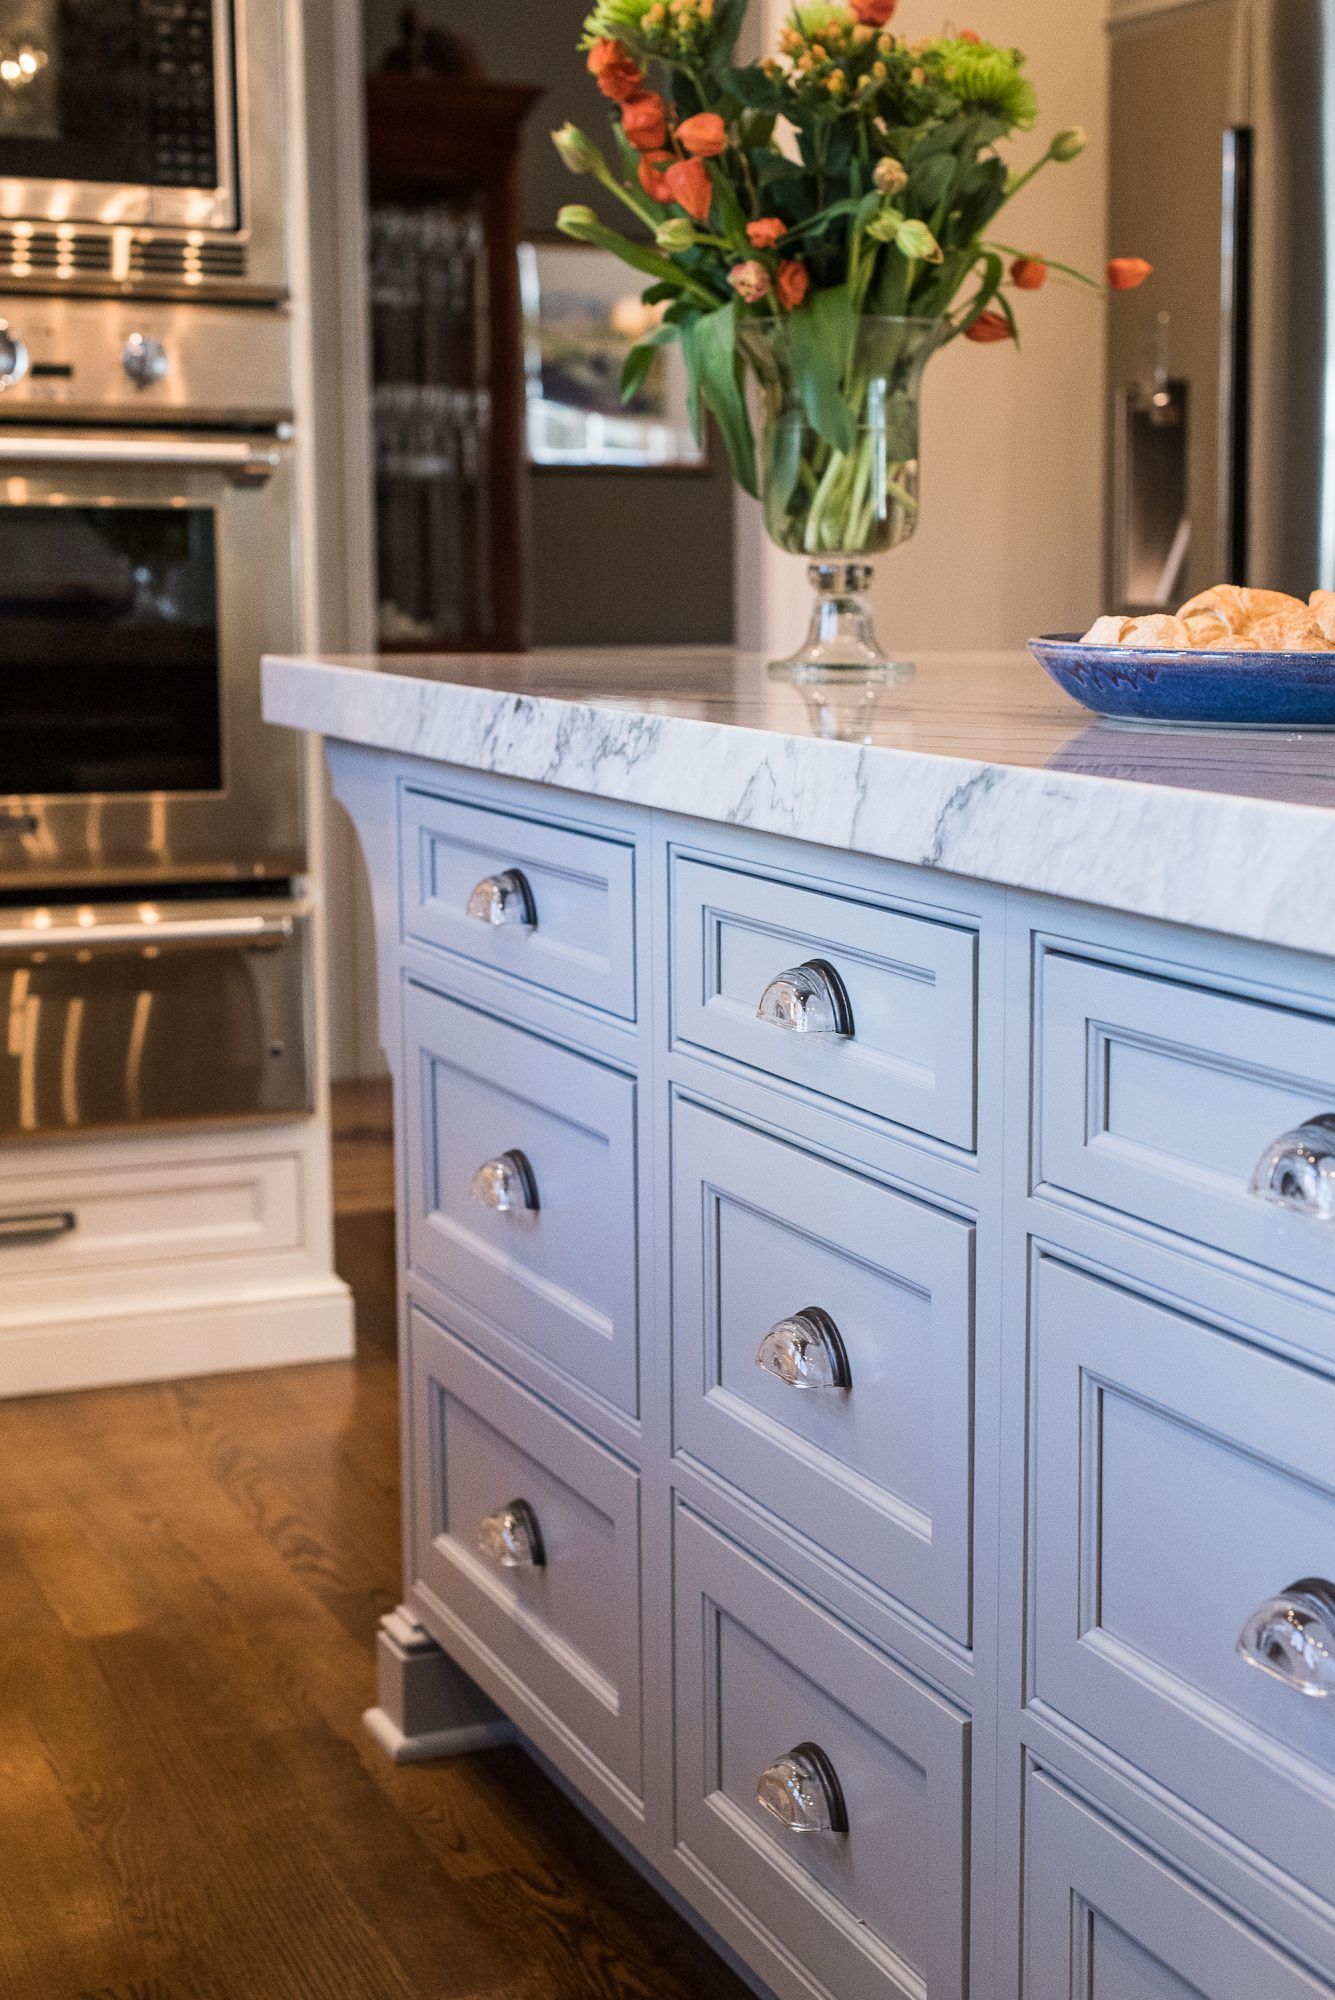 Indbygget traditionel køkkenskabsstil, lyseblå kabinet